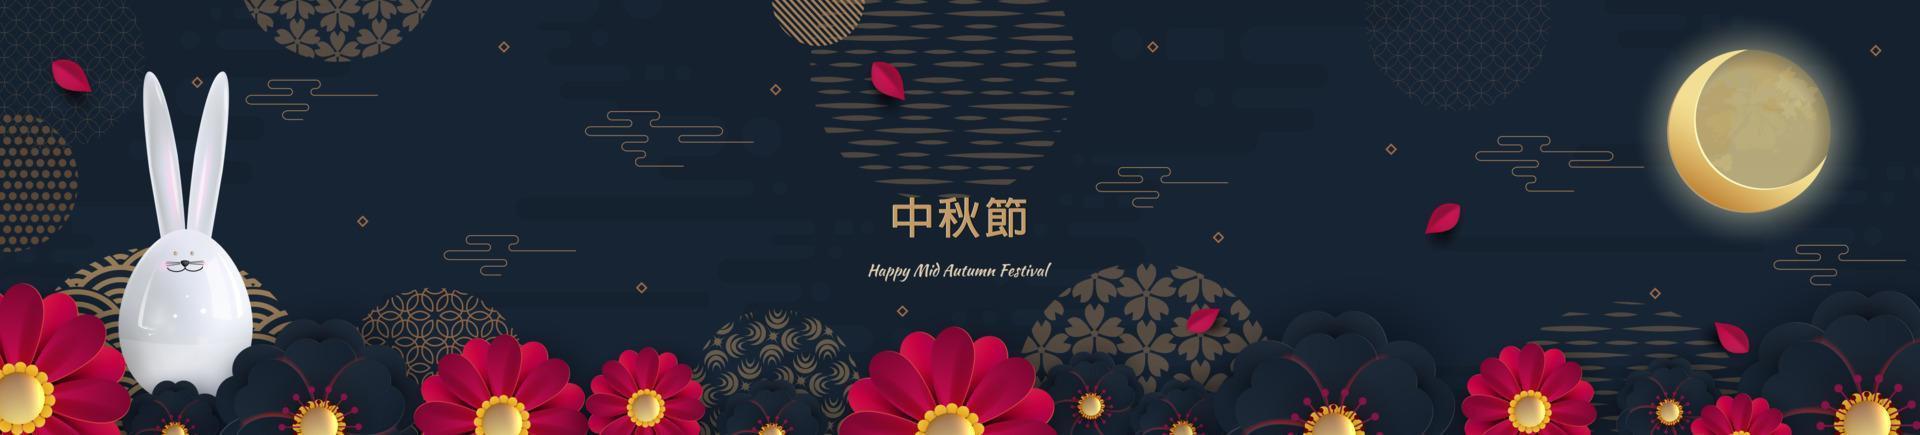 design de banner com padrões de círculos chineses tradicionais representando a lua cheia, lebre brilhante. texto chinês feliz meados do outono, ouro em azul escuro. vetor